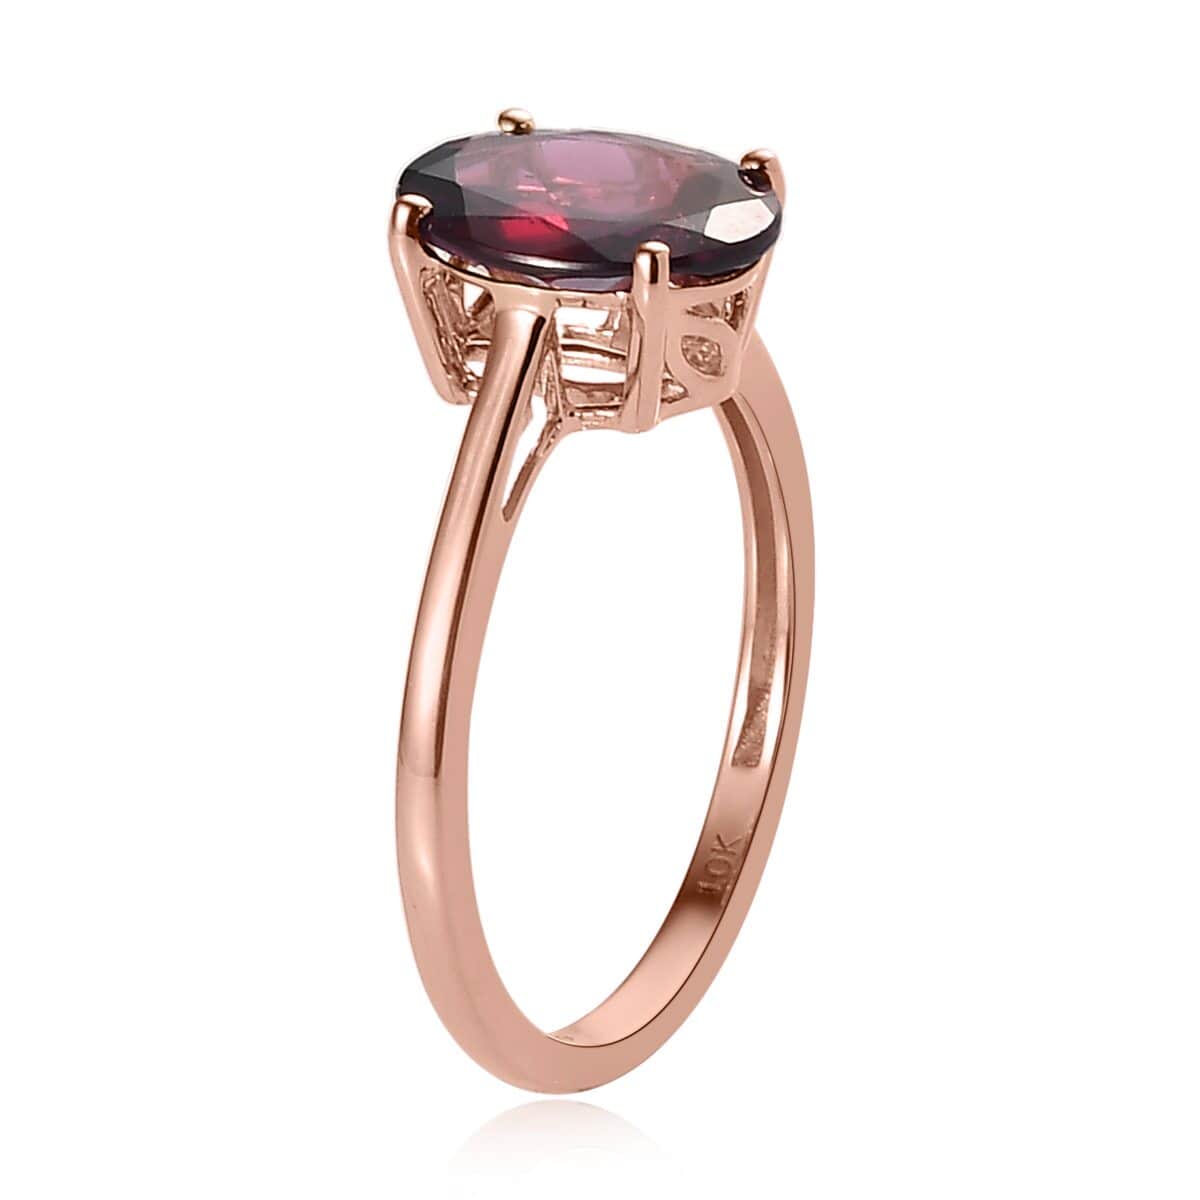 Luxoro 10K Rose Gold Premium Orissa Rhodolite Garnet Solitaire Ring (Size 10.0) 3.00 ctw image number 3